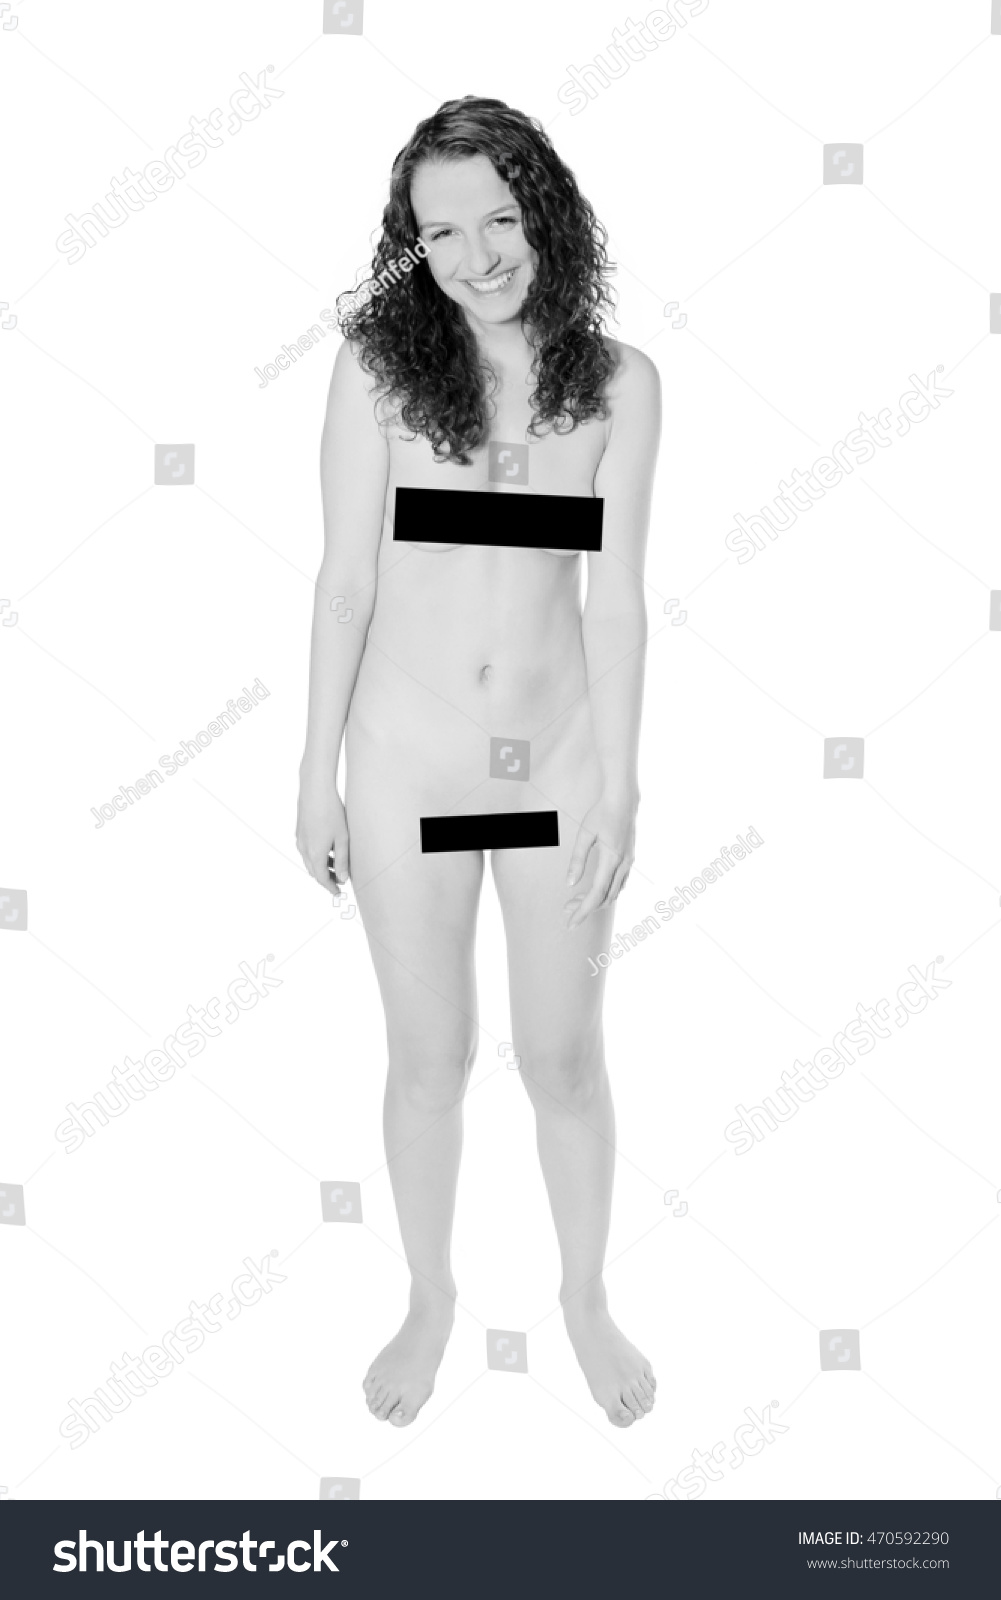 Naked fem hid nudity under the black lingerie